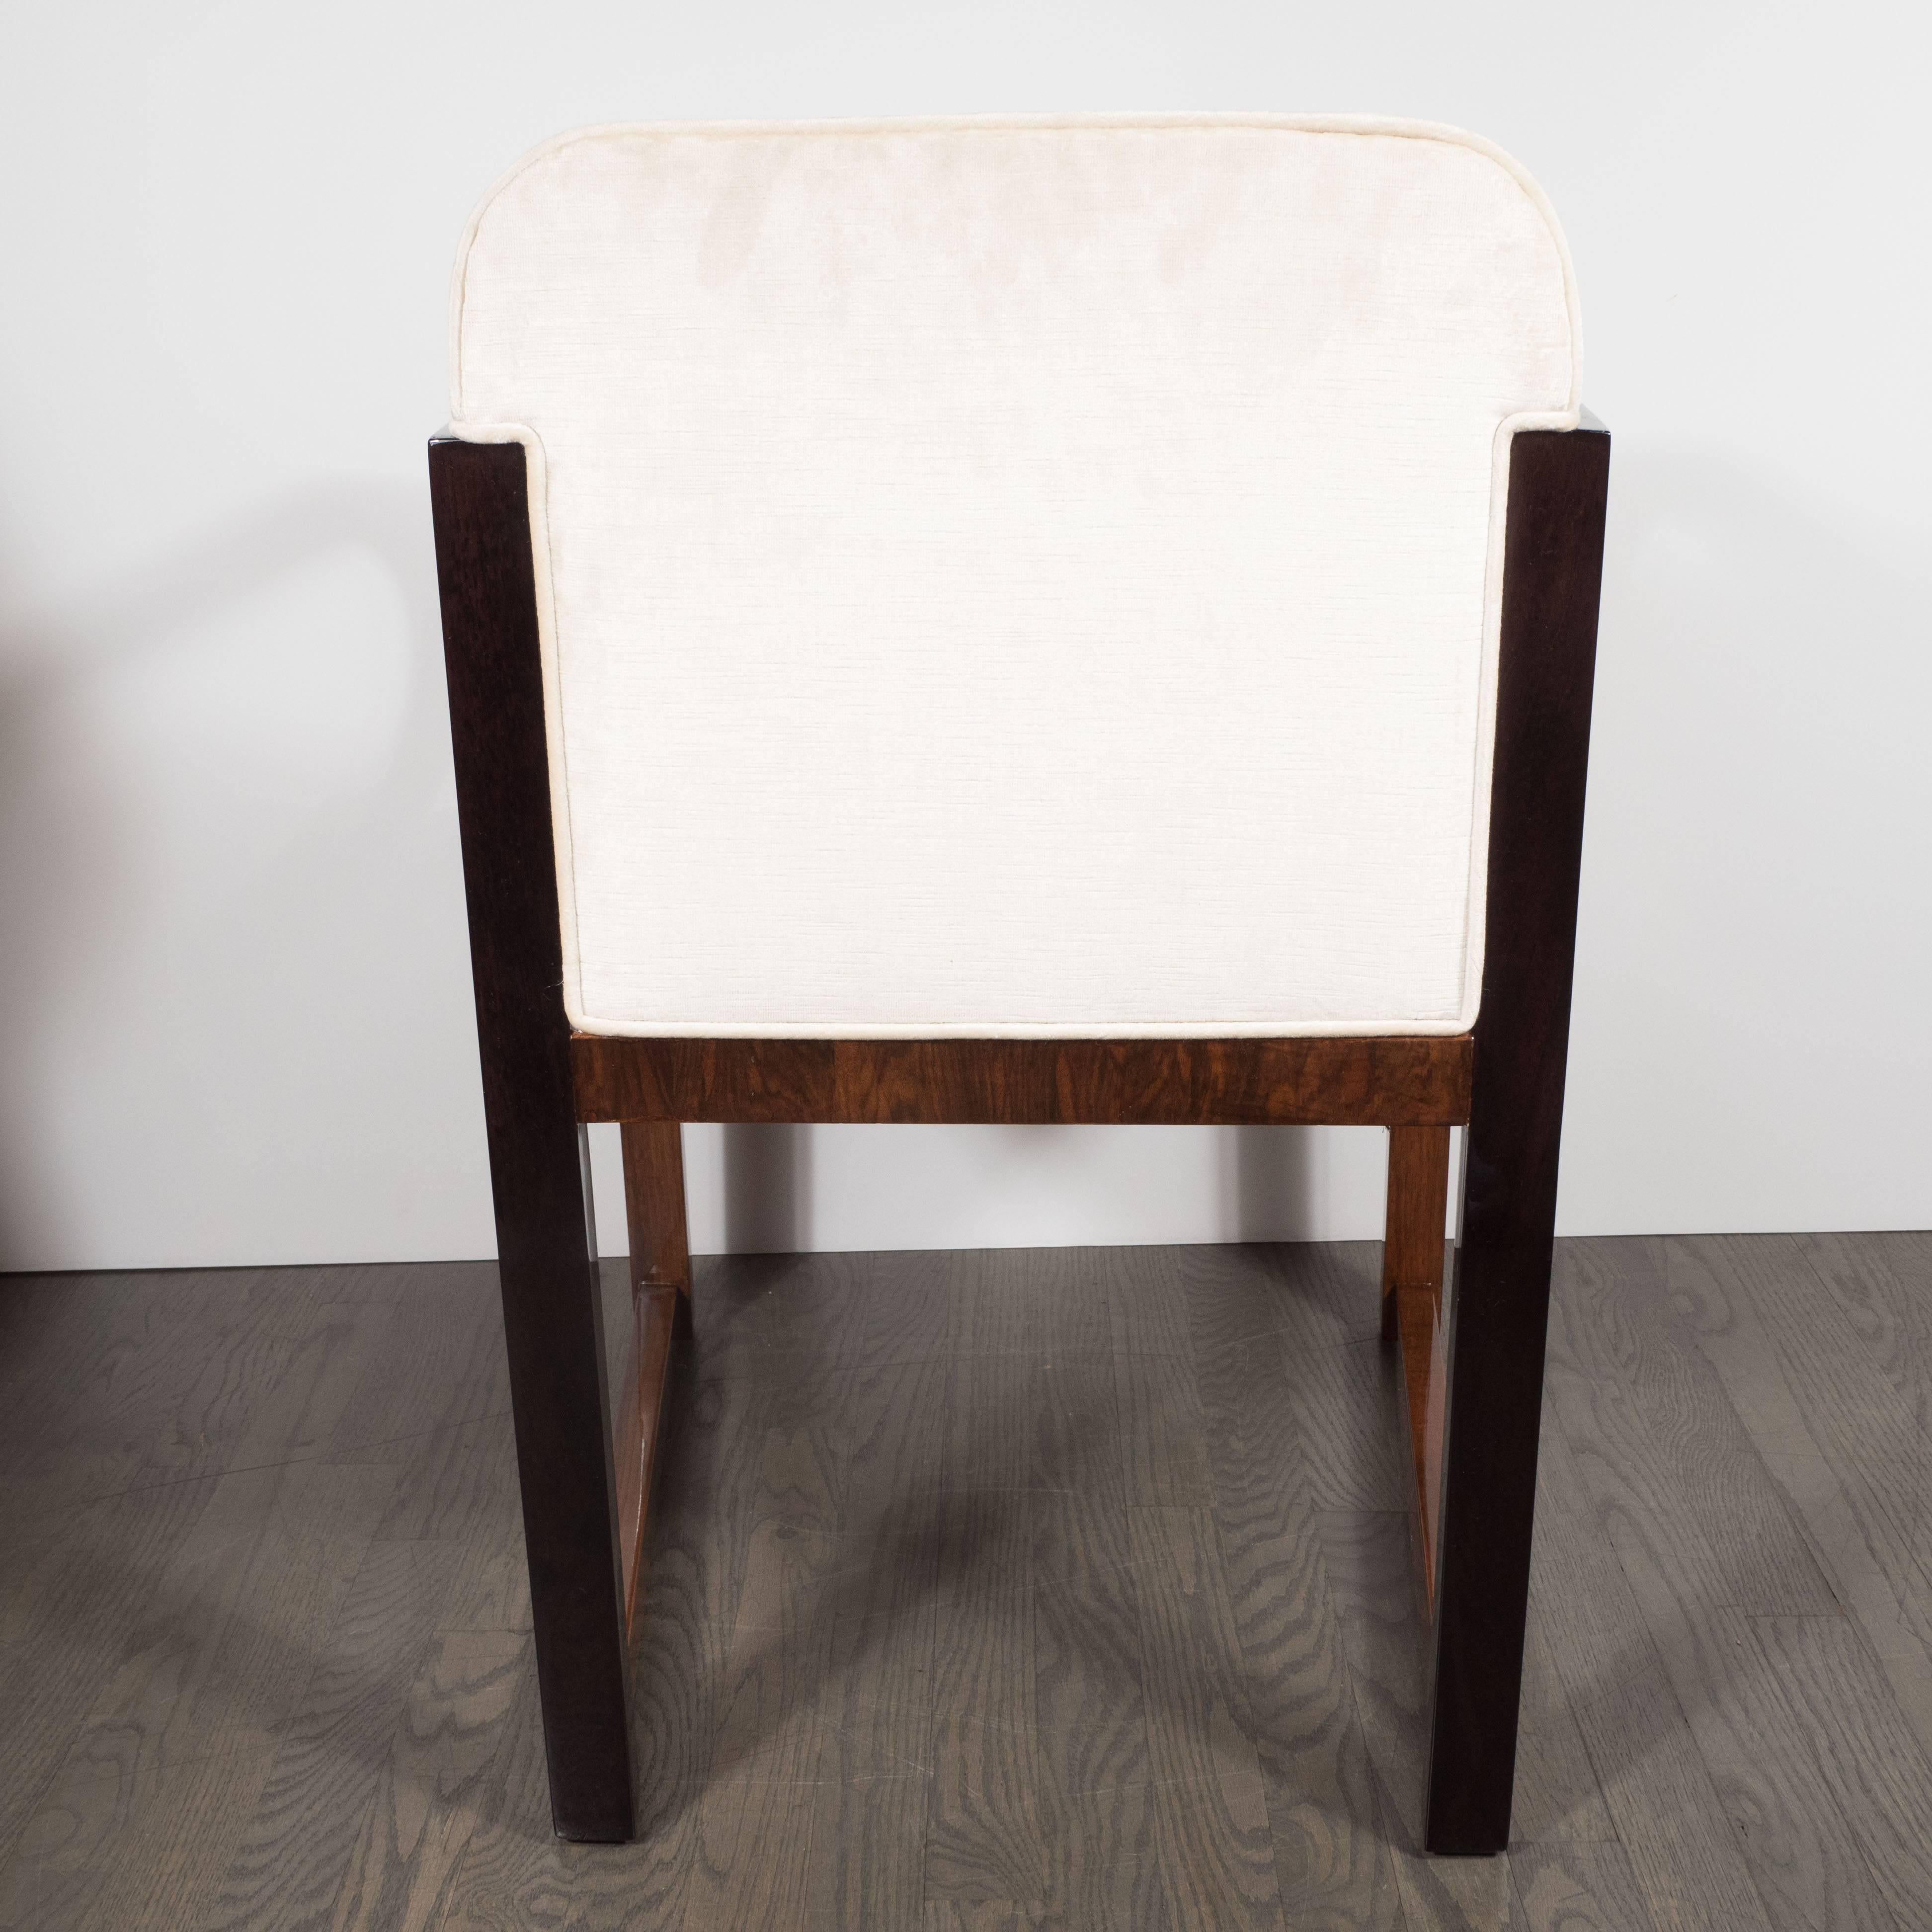 Streamlined Art Deco Polished Walnut Occasional Chair with Ebonized Walnut Arms 1